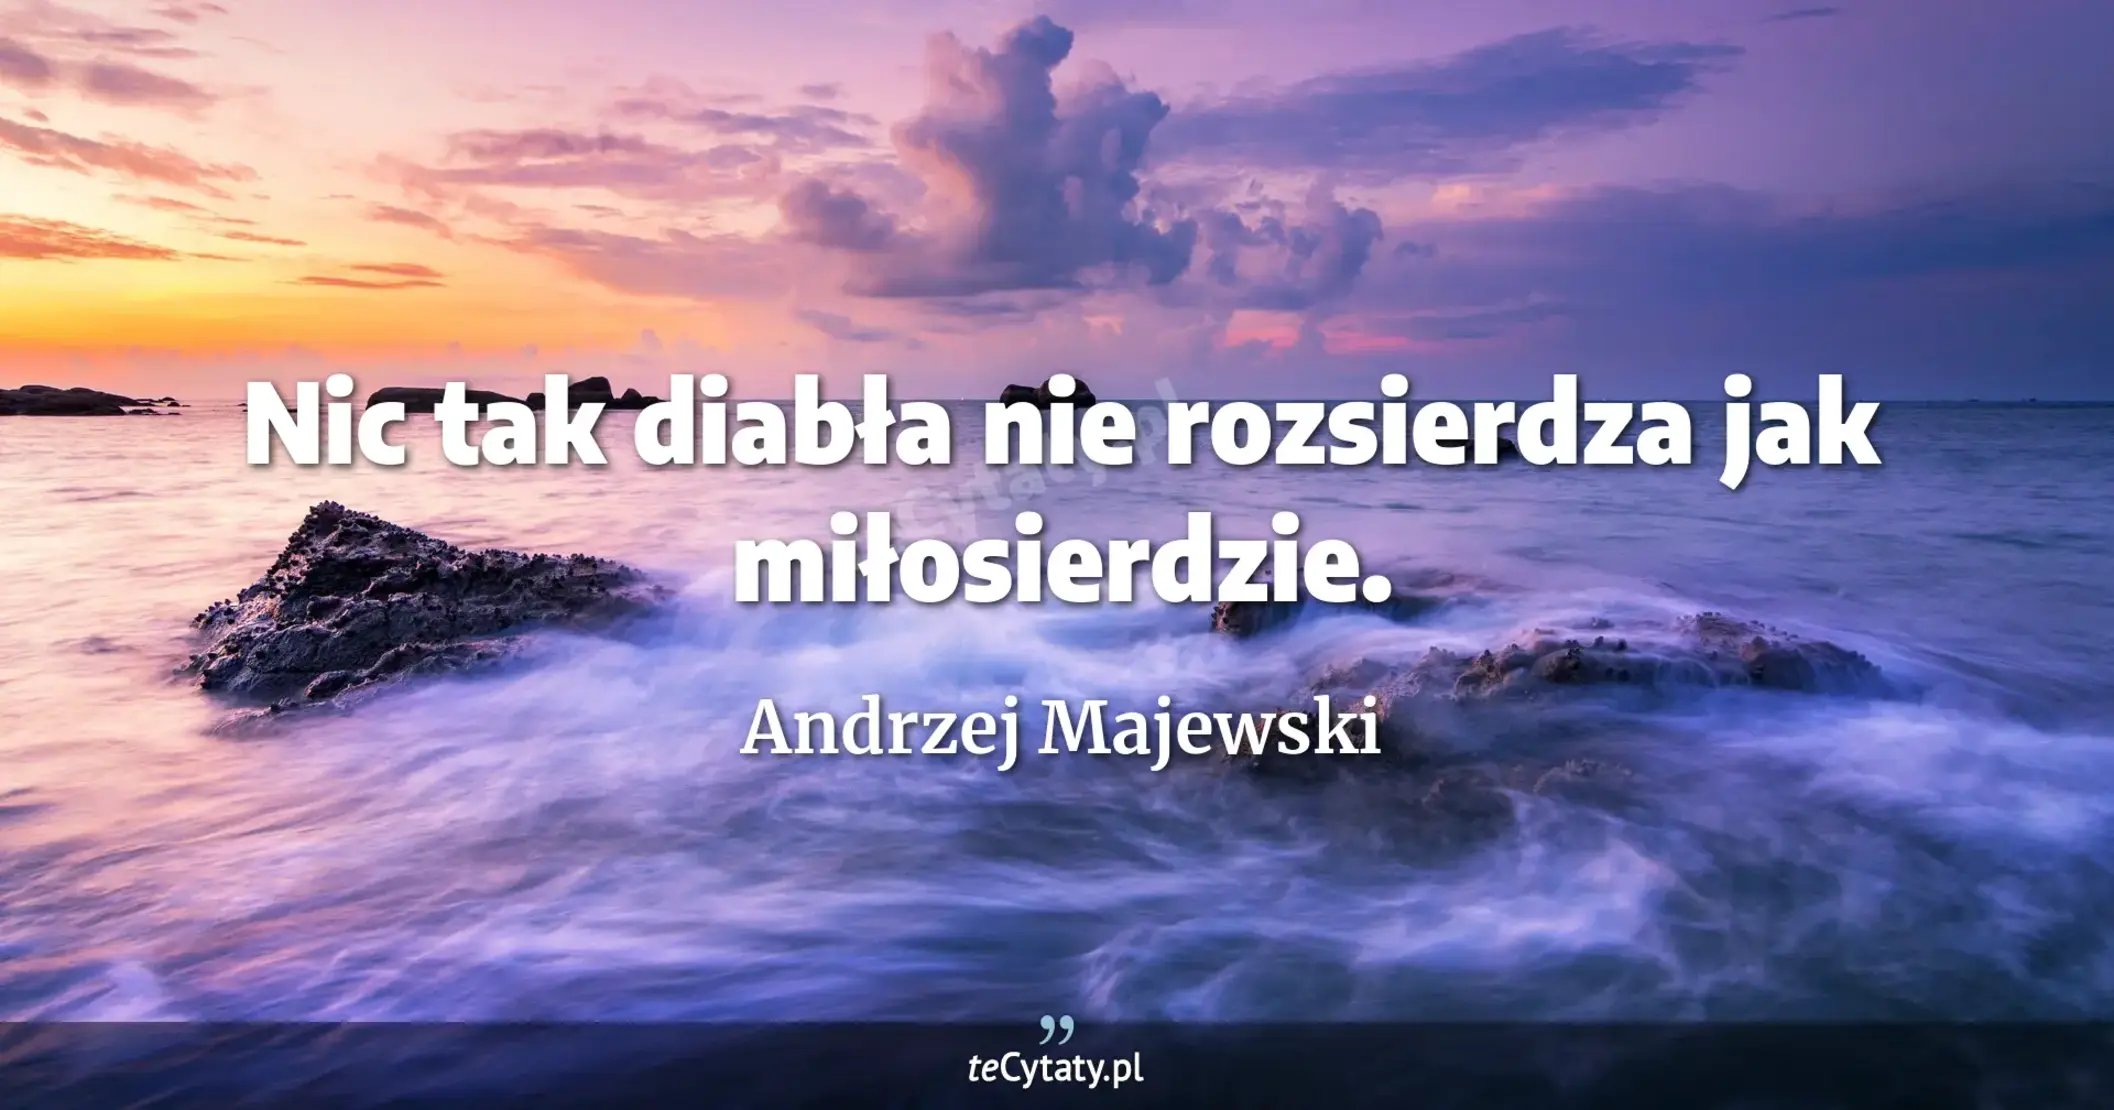 Nic tak diabła nie rozsierdza jak miłosierdzie. - Andrzej Majewski